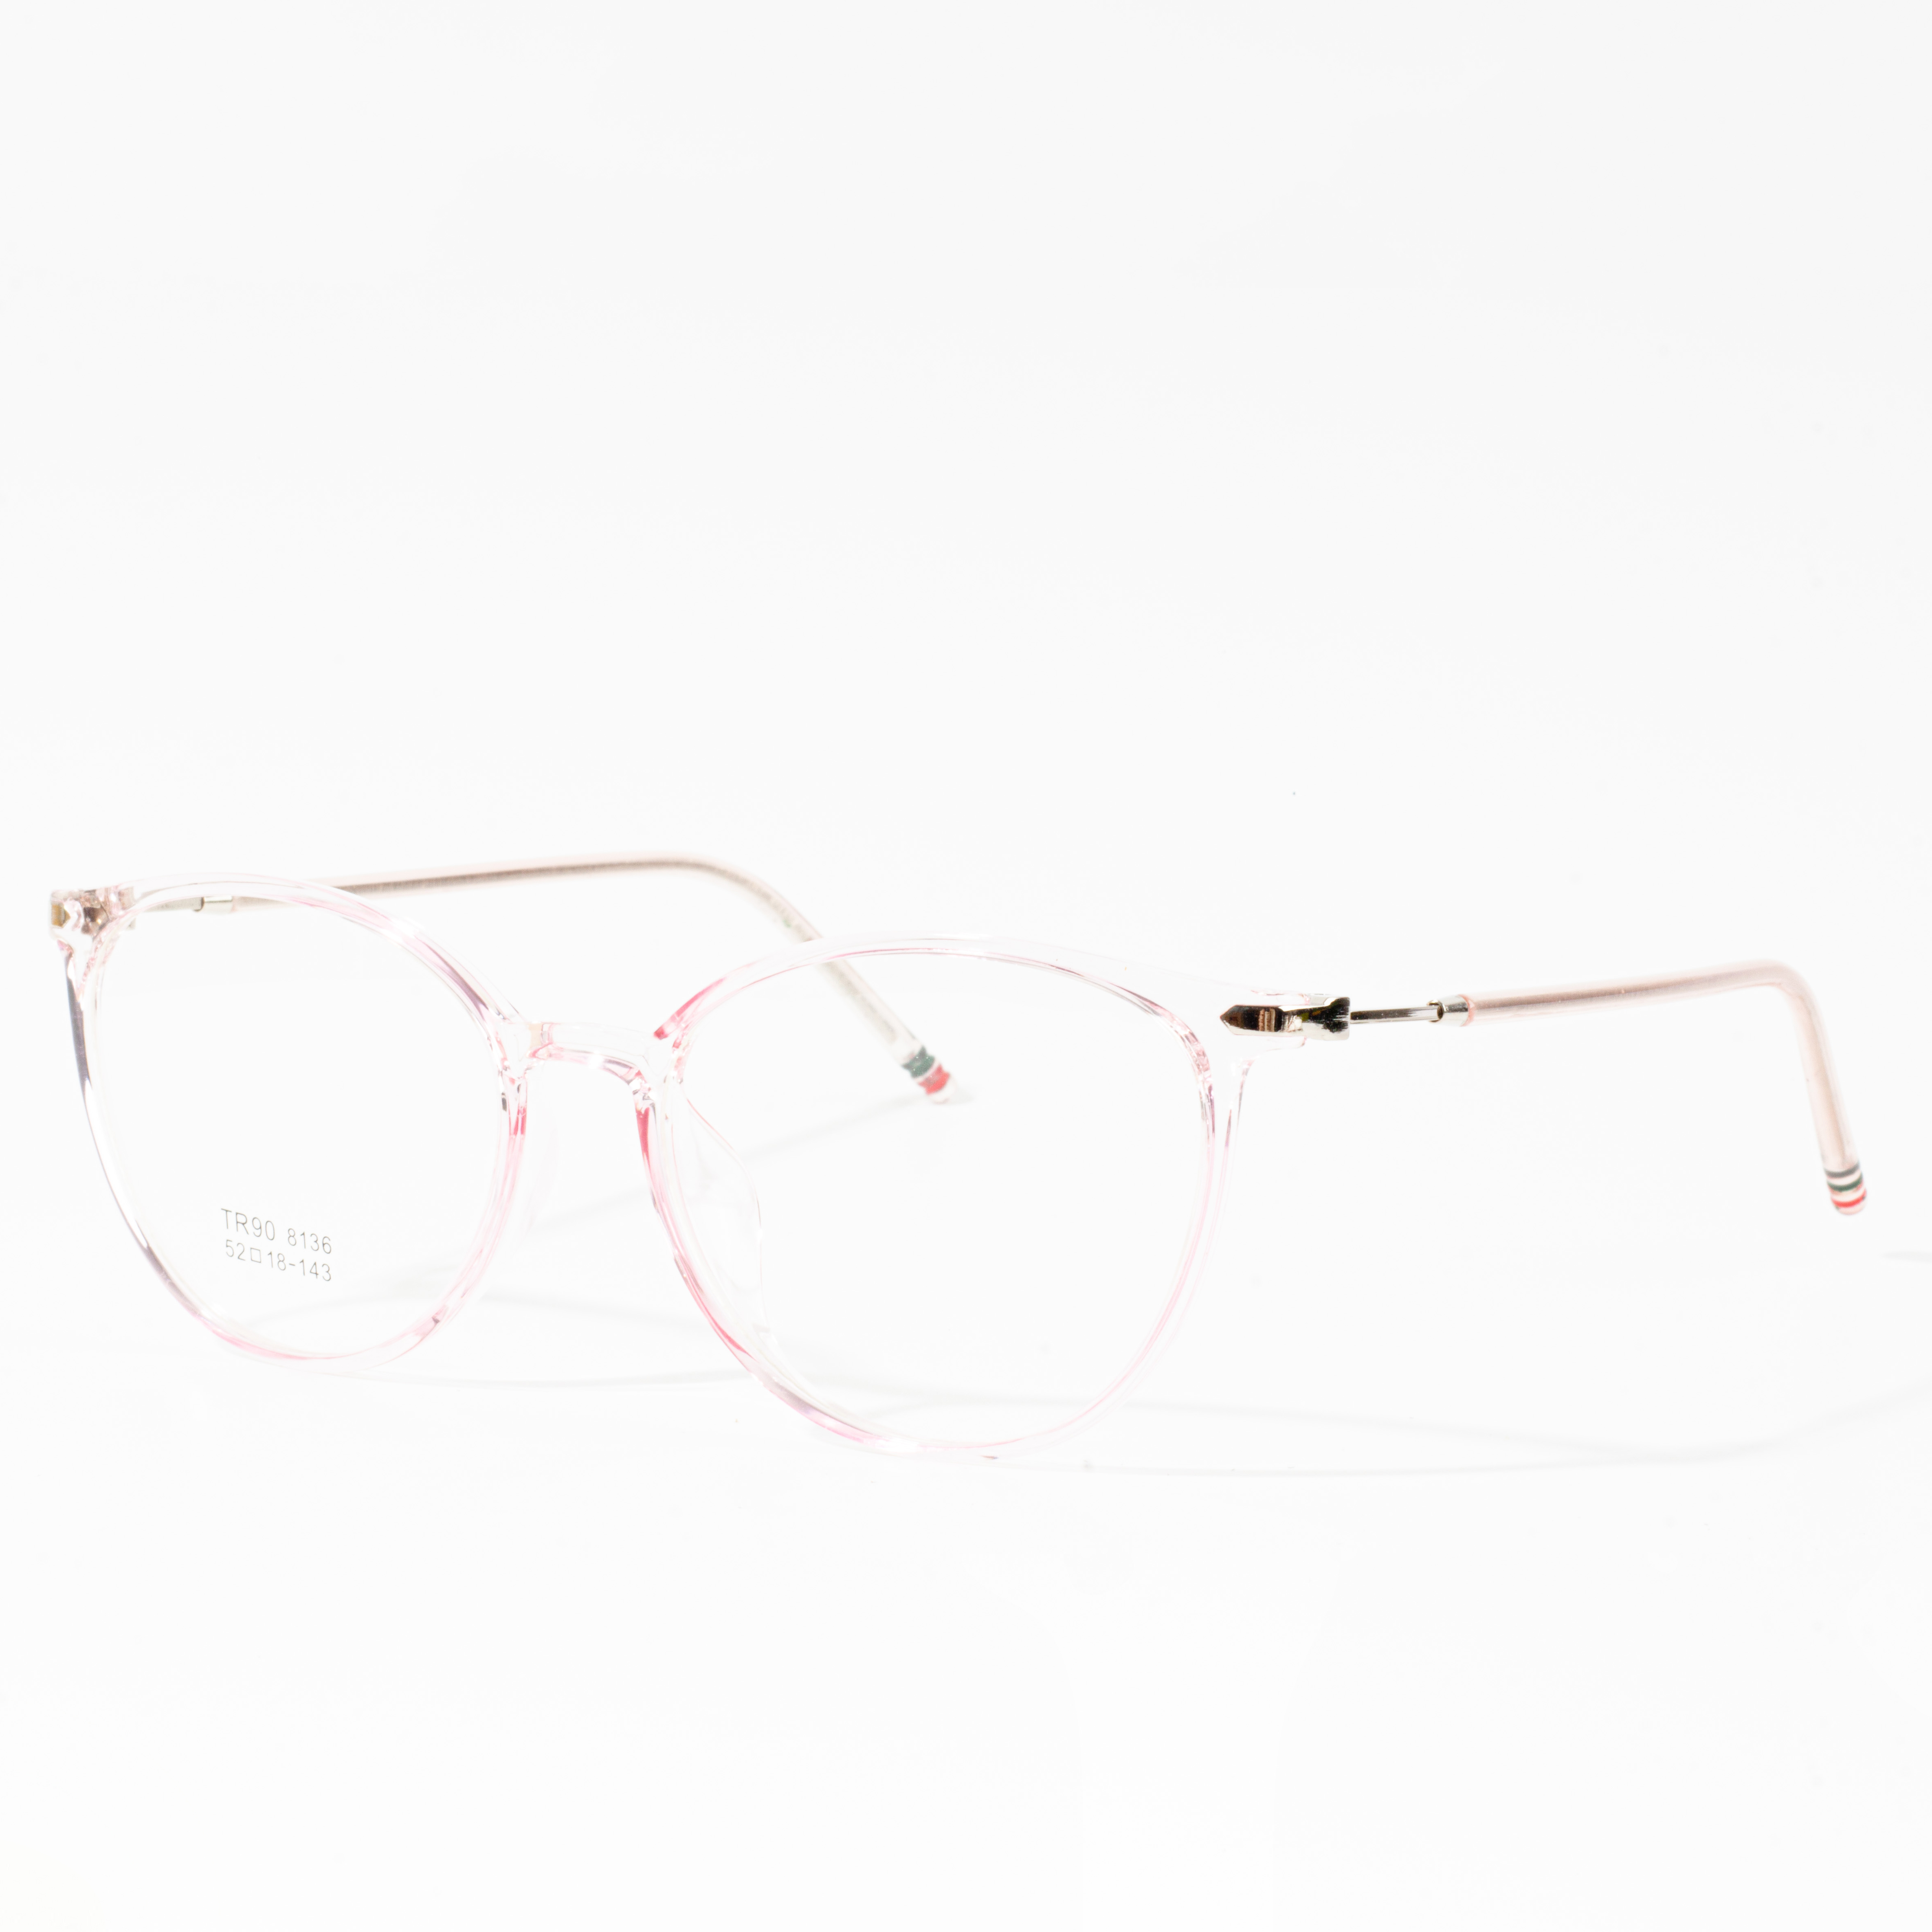 frame kacamata desainer wanita